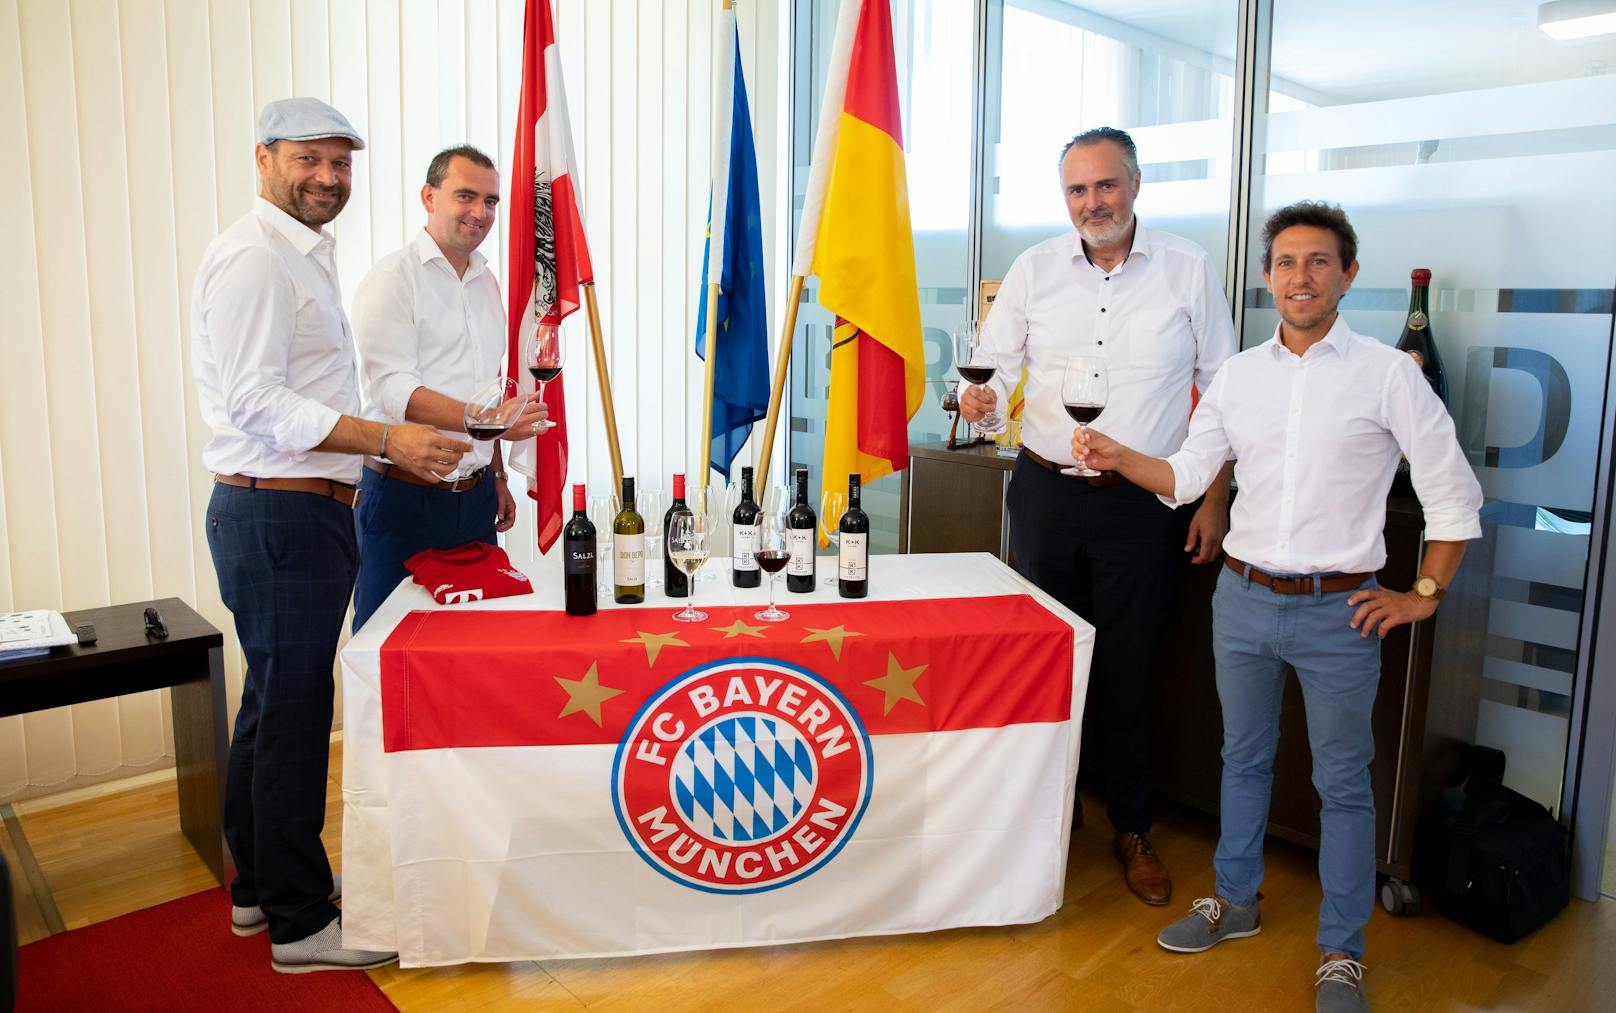 Bayern München schenkt jetzt Burgenland-Wein aus